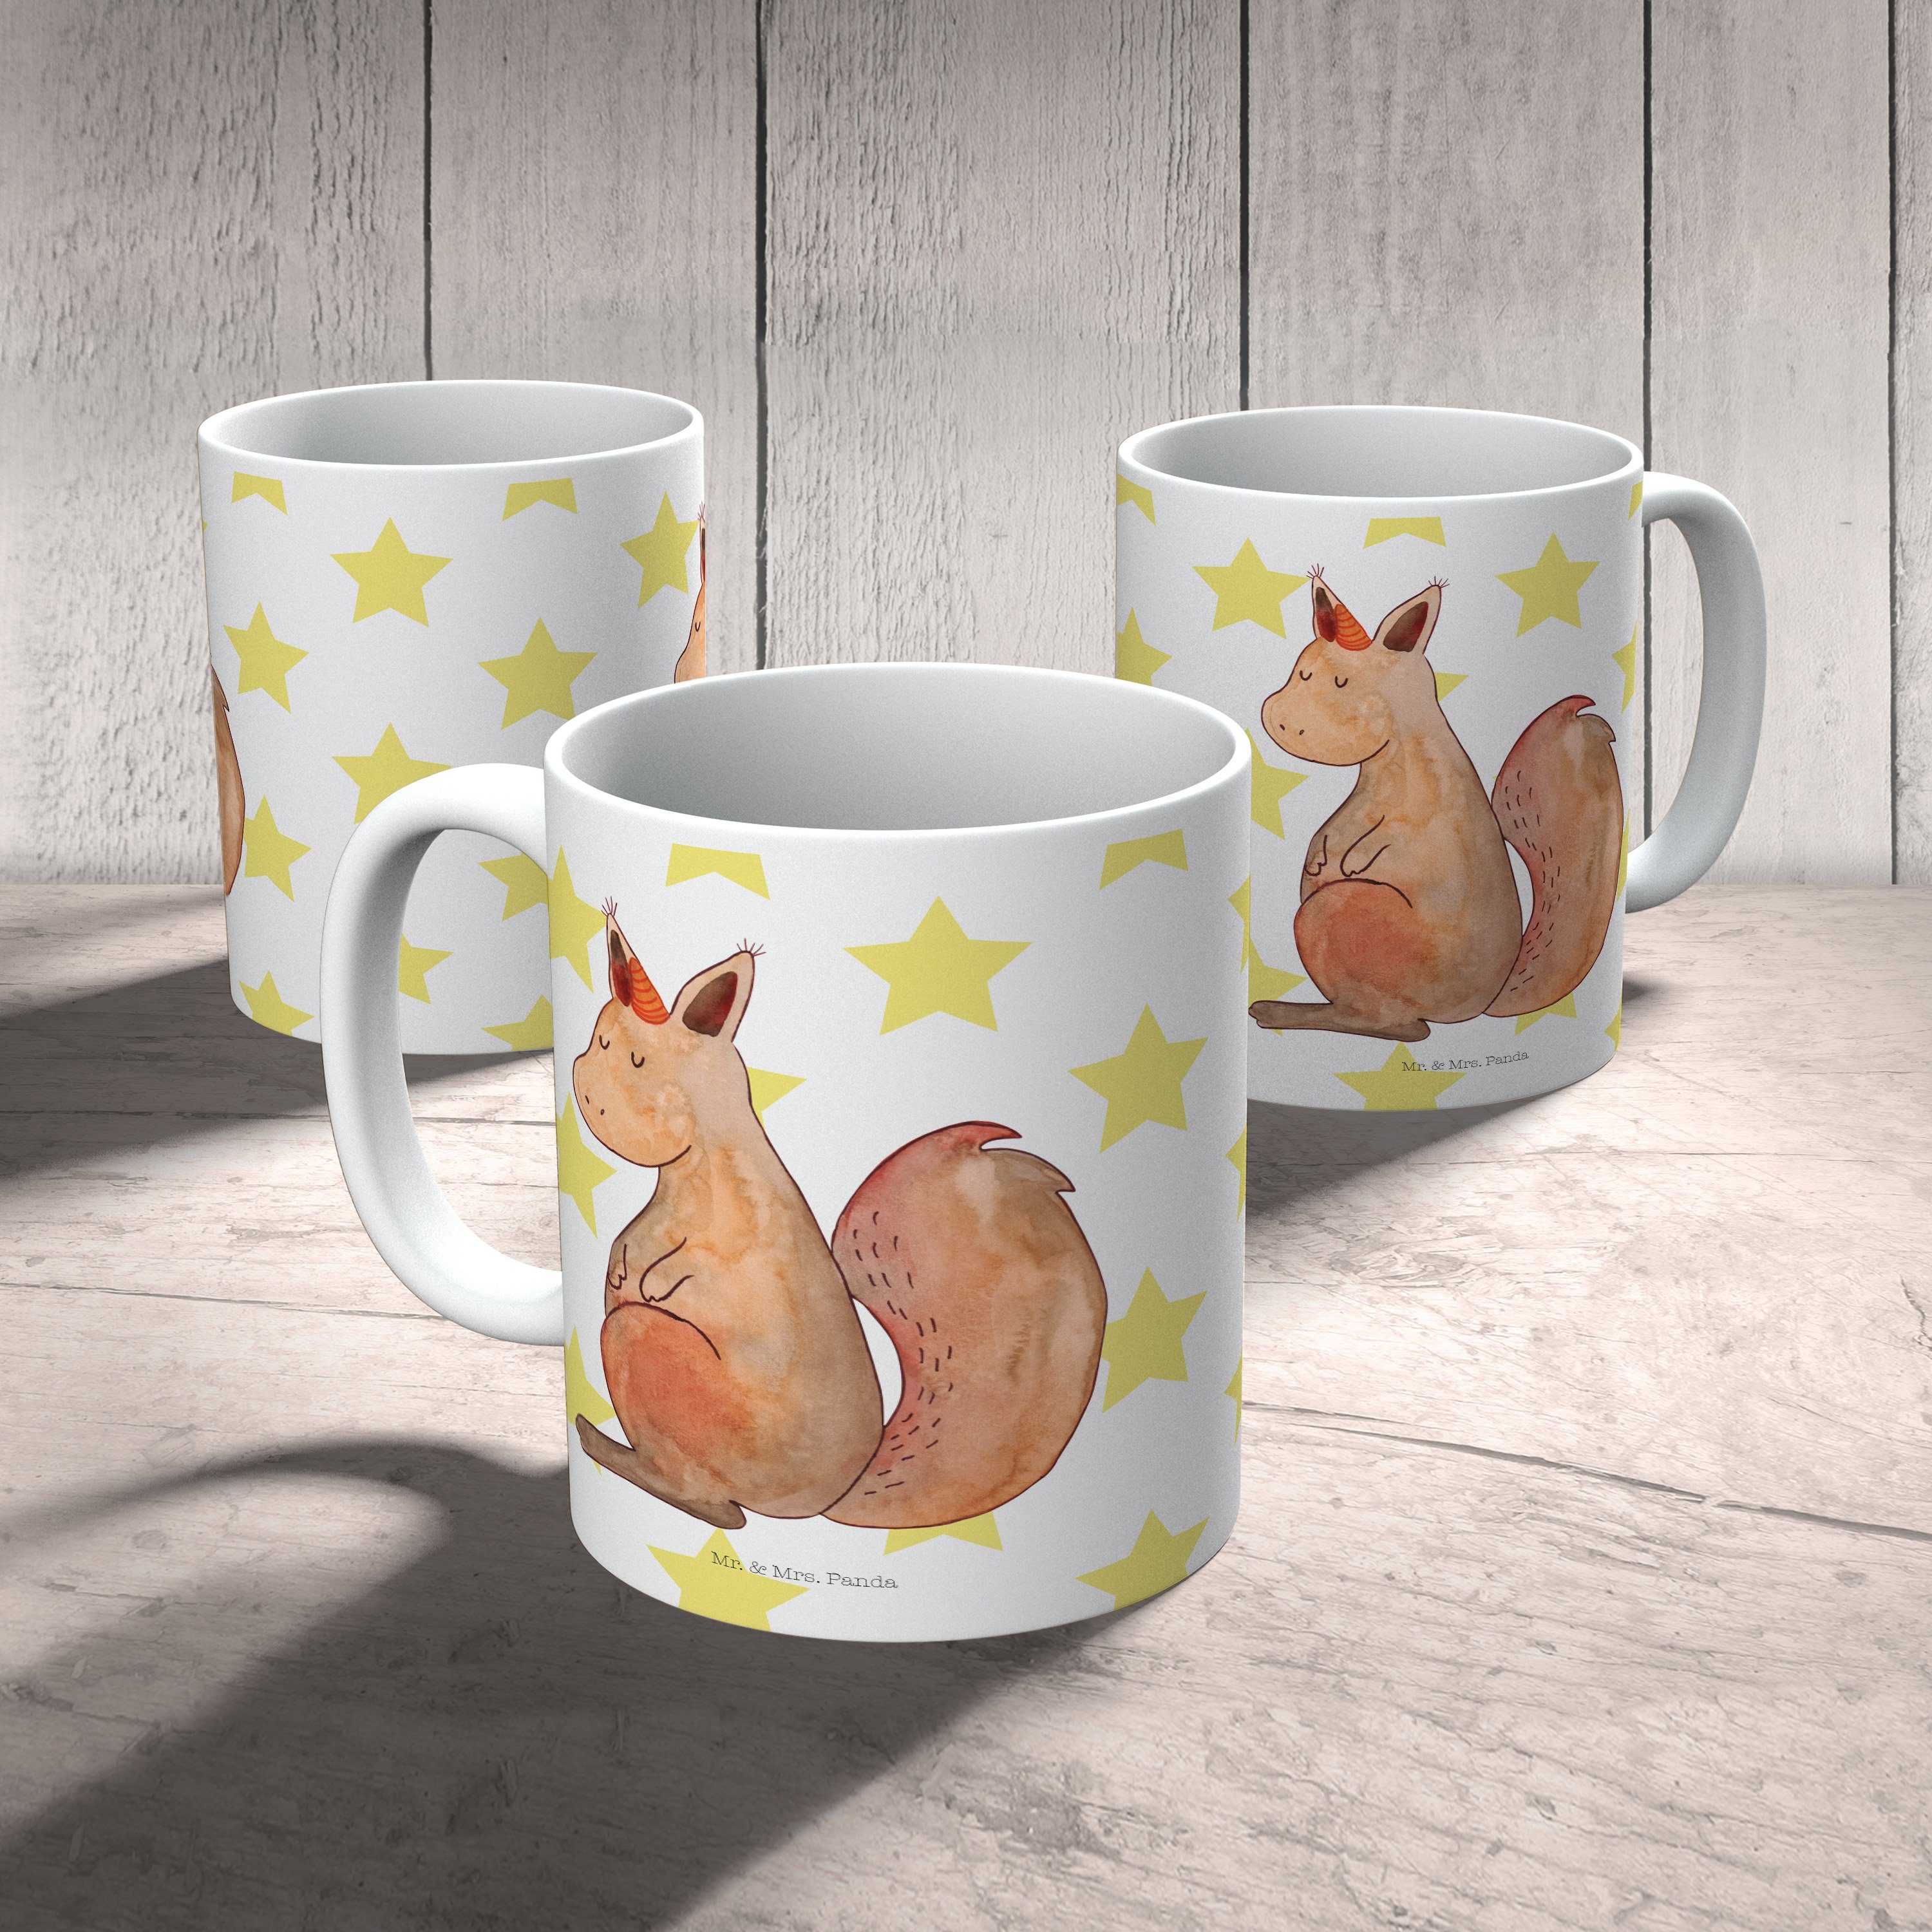 Mr. & Mrs. Panda Tasse Weiß E, Glaube - Kaffeebecher, Keramik Geschenk, Pegasus, Einhörnchen - Tasse